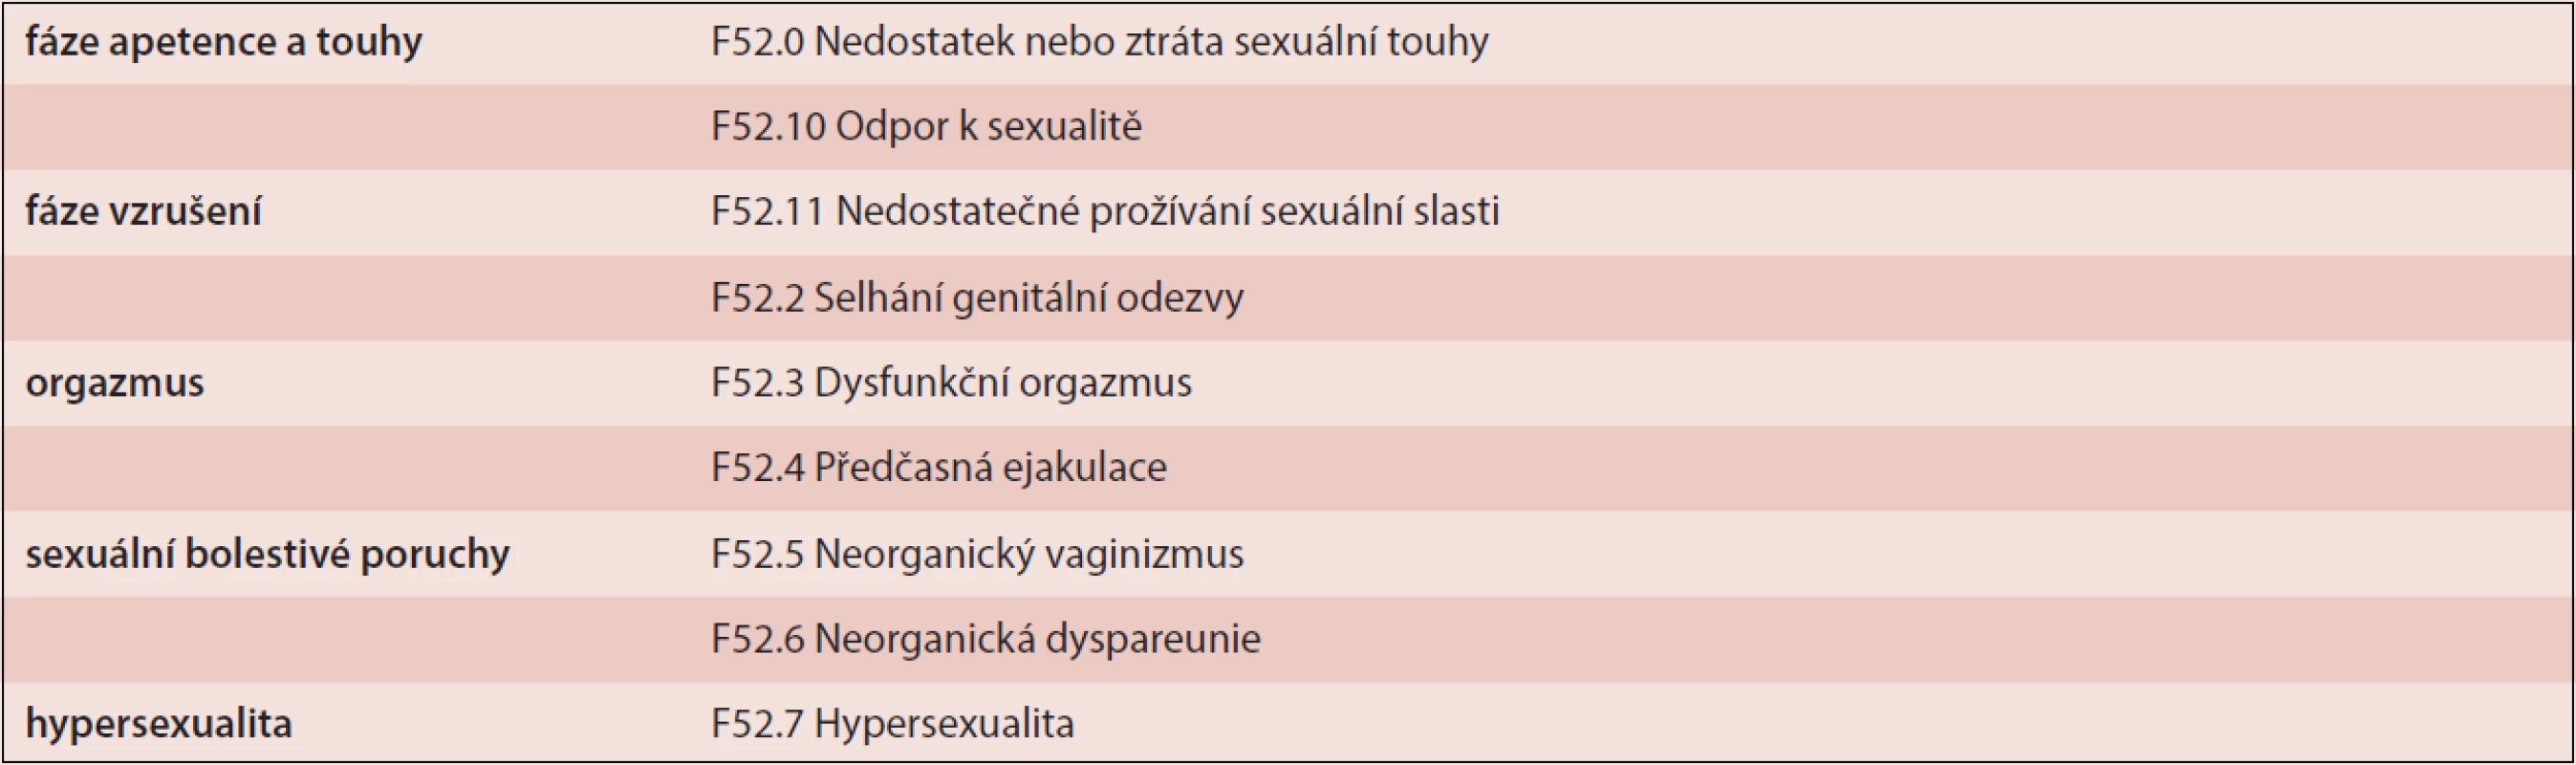 Klasifikace poruch sexuálních funkcí